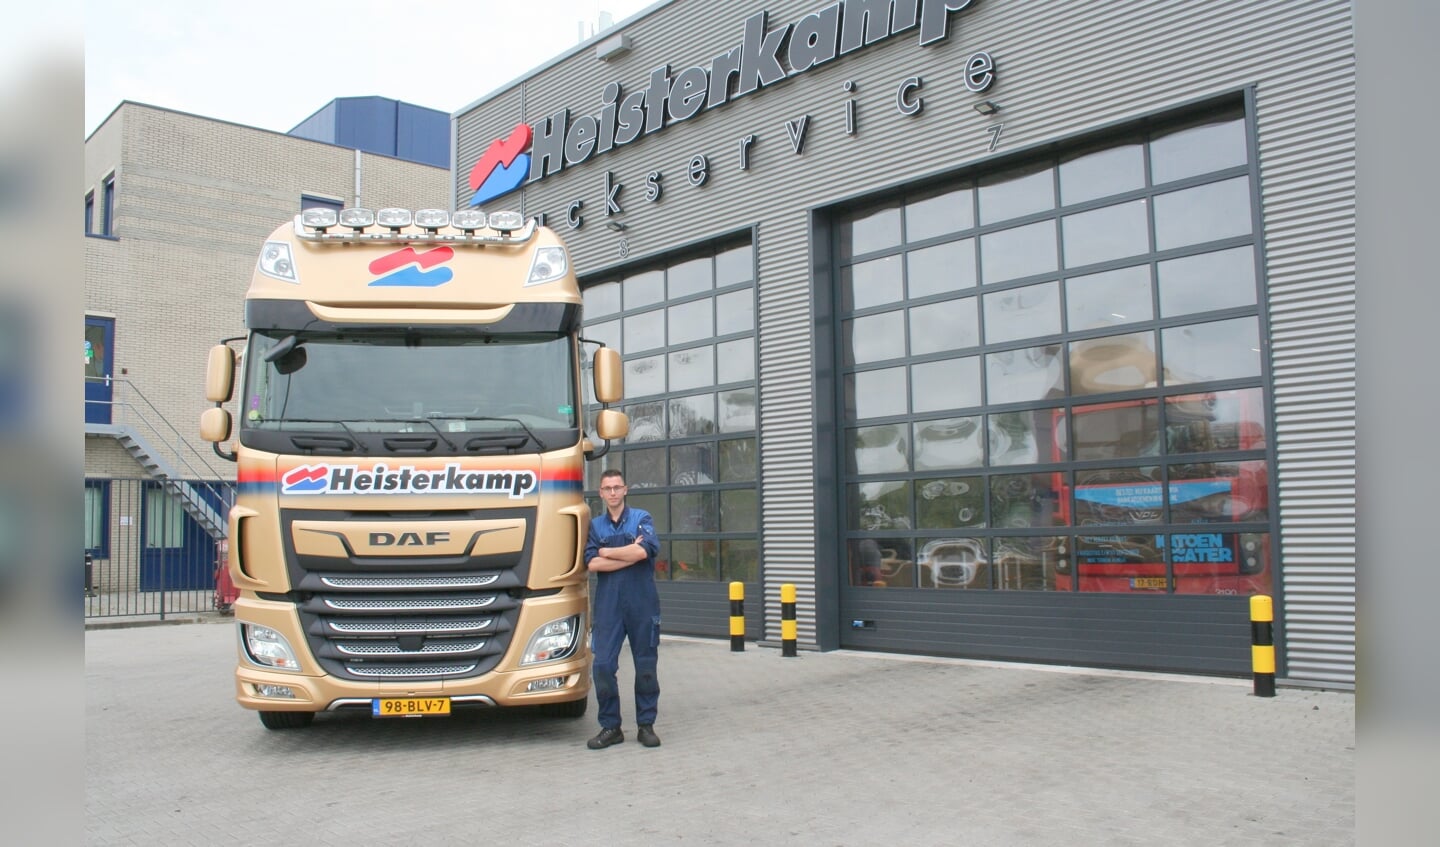 Chiel toont vol trots de Gouden truck van Heisterkamp.